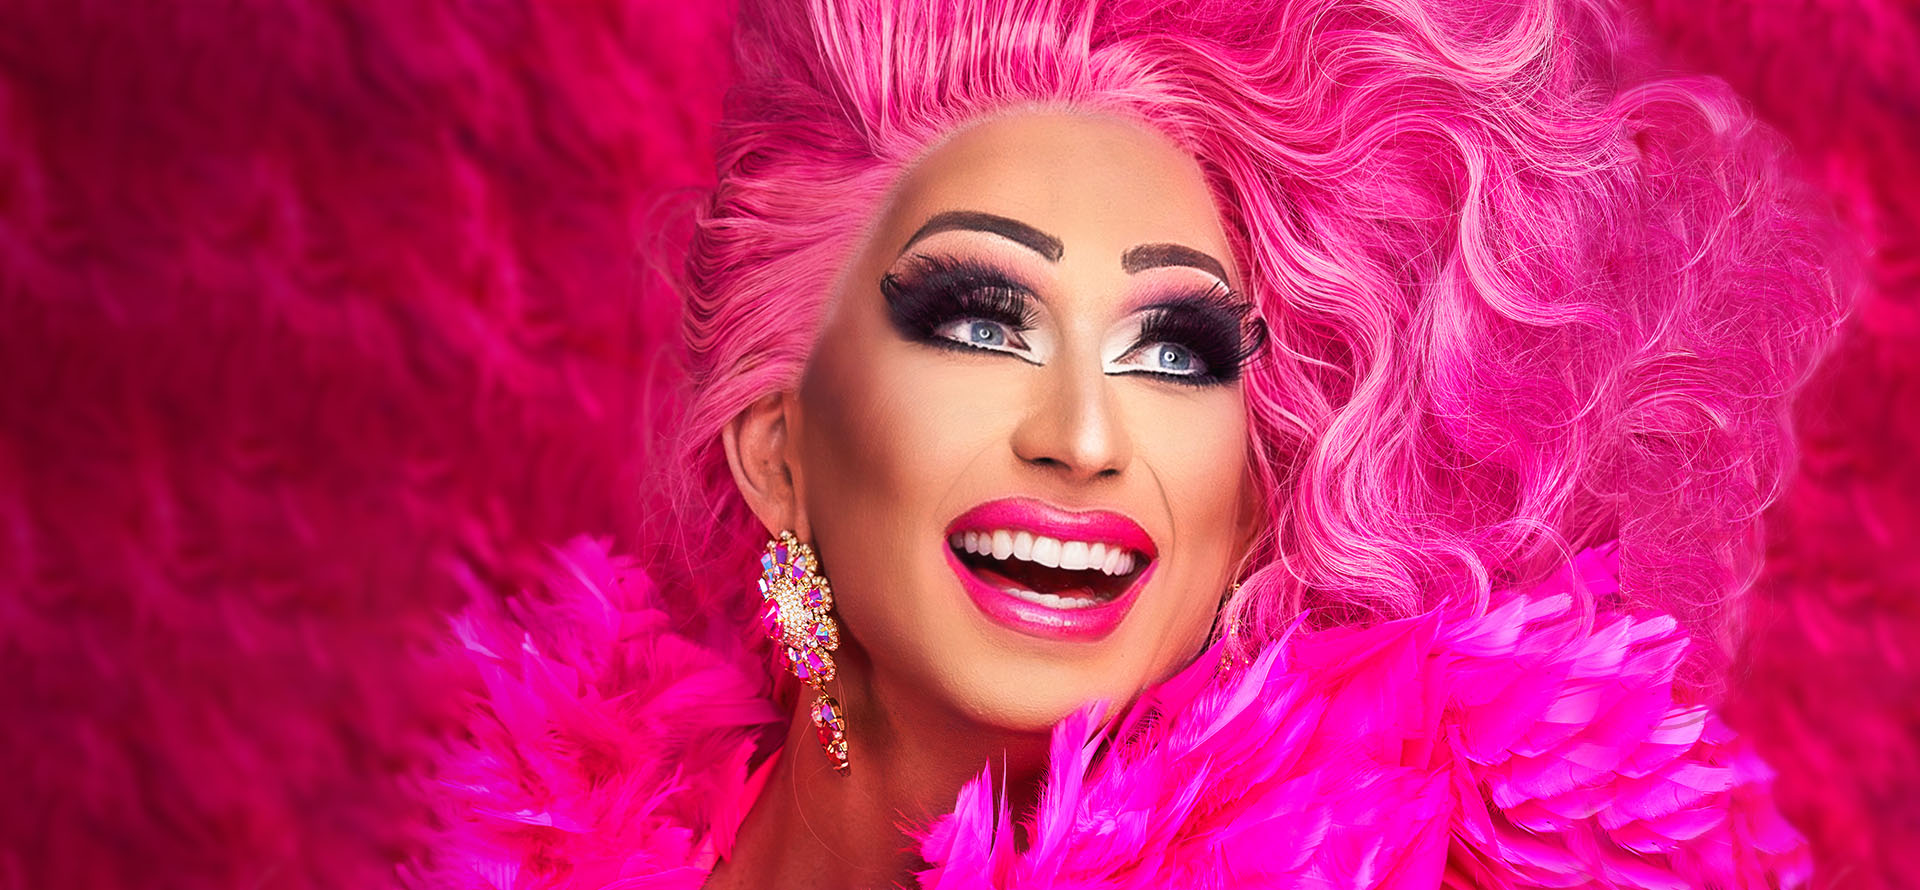 Drag-artisti suuressa pinkissä hiuspehkossa